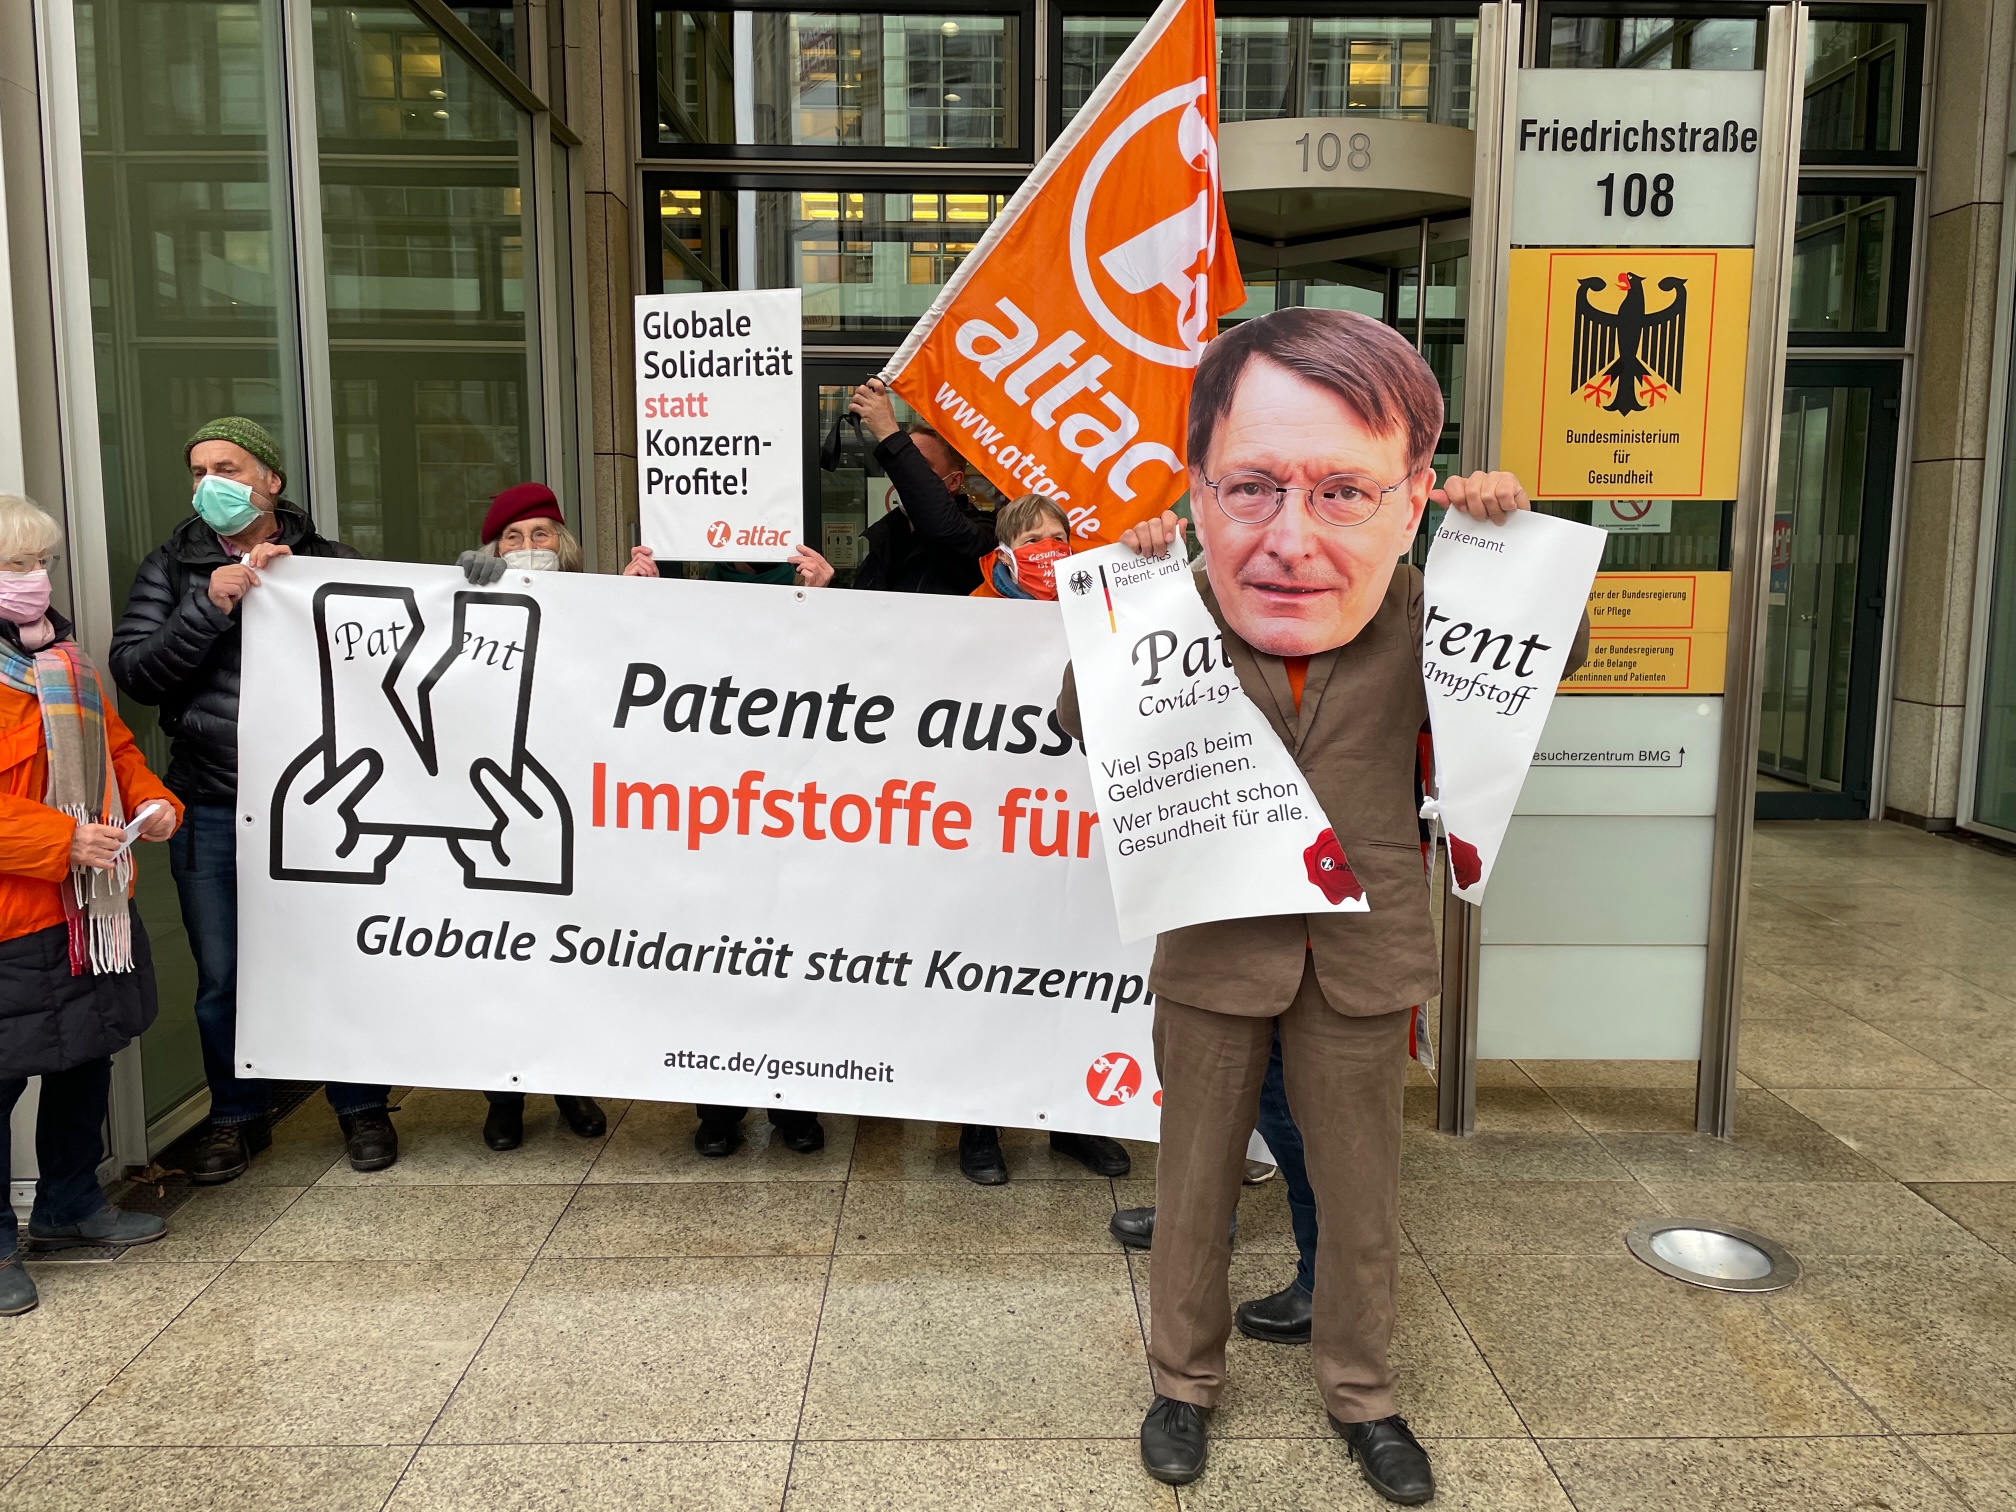 Ein als Karl Lauterbach verkleideter Aktivist zerreißt vor dem Bundesgesundheitsministerium ein übergroßes Patent. Im Hintergrund ist ein Transparent mit dem Slogan "Patente aussetzen – Impfstoffe für alle!"